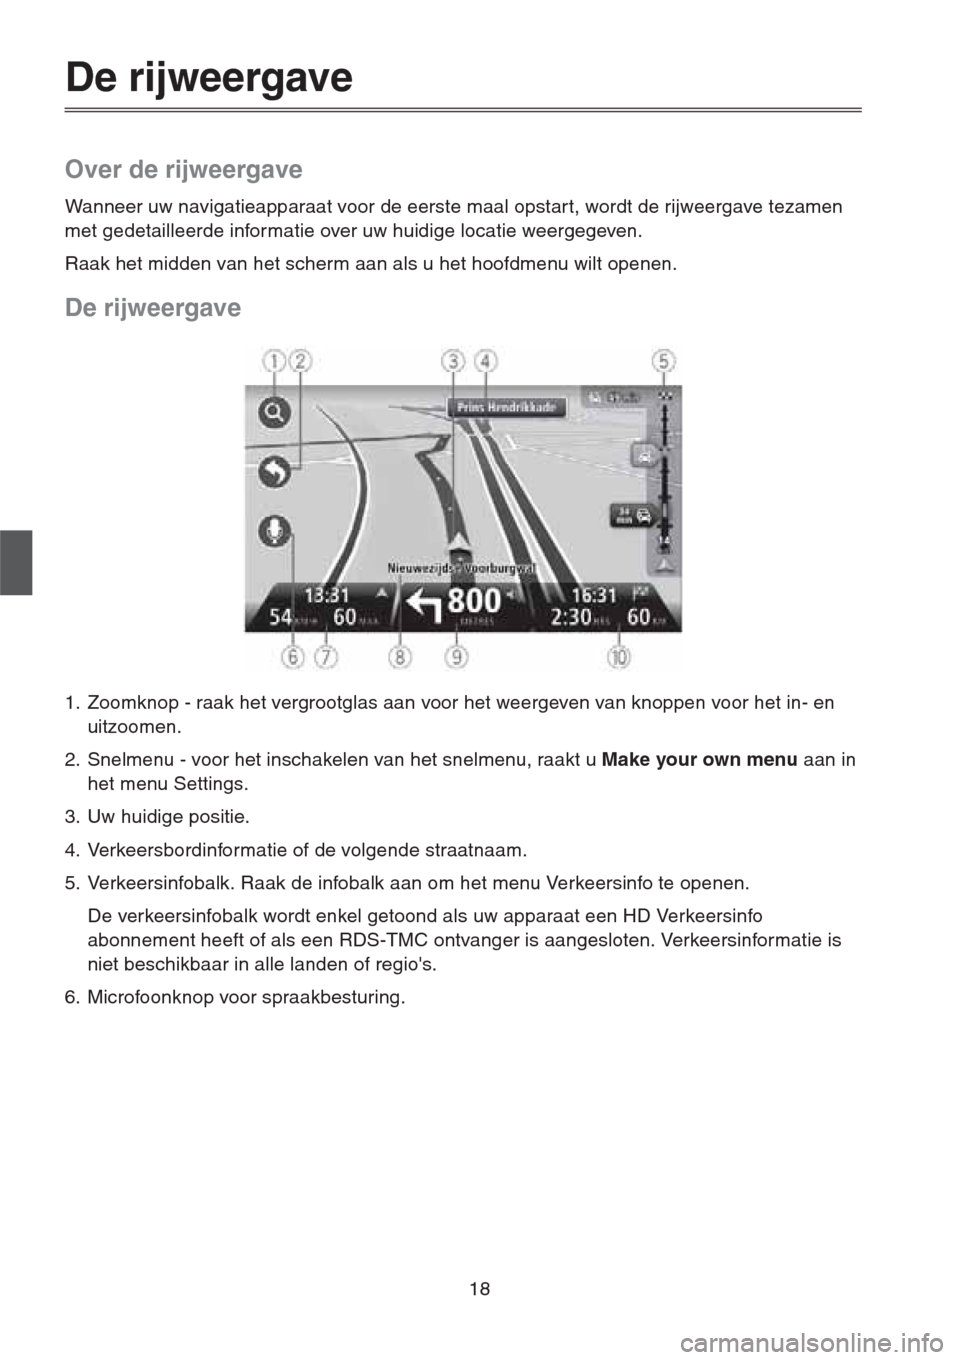 MAZDA MODEL CX-5 2013  Navigation handleiding (in Dutch) 18
De rijweergave
Over de rijweergave
Wanneer uw navigatieapparaat voor de eerste maal opstart, wordt de rijweergave tezamen 
met gedetailleerde informatie over uw huidige locatie weergegeven.
Raak he